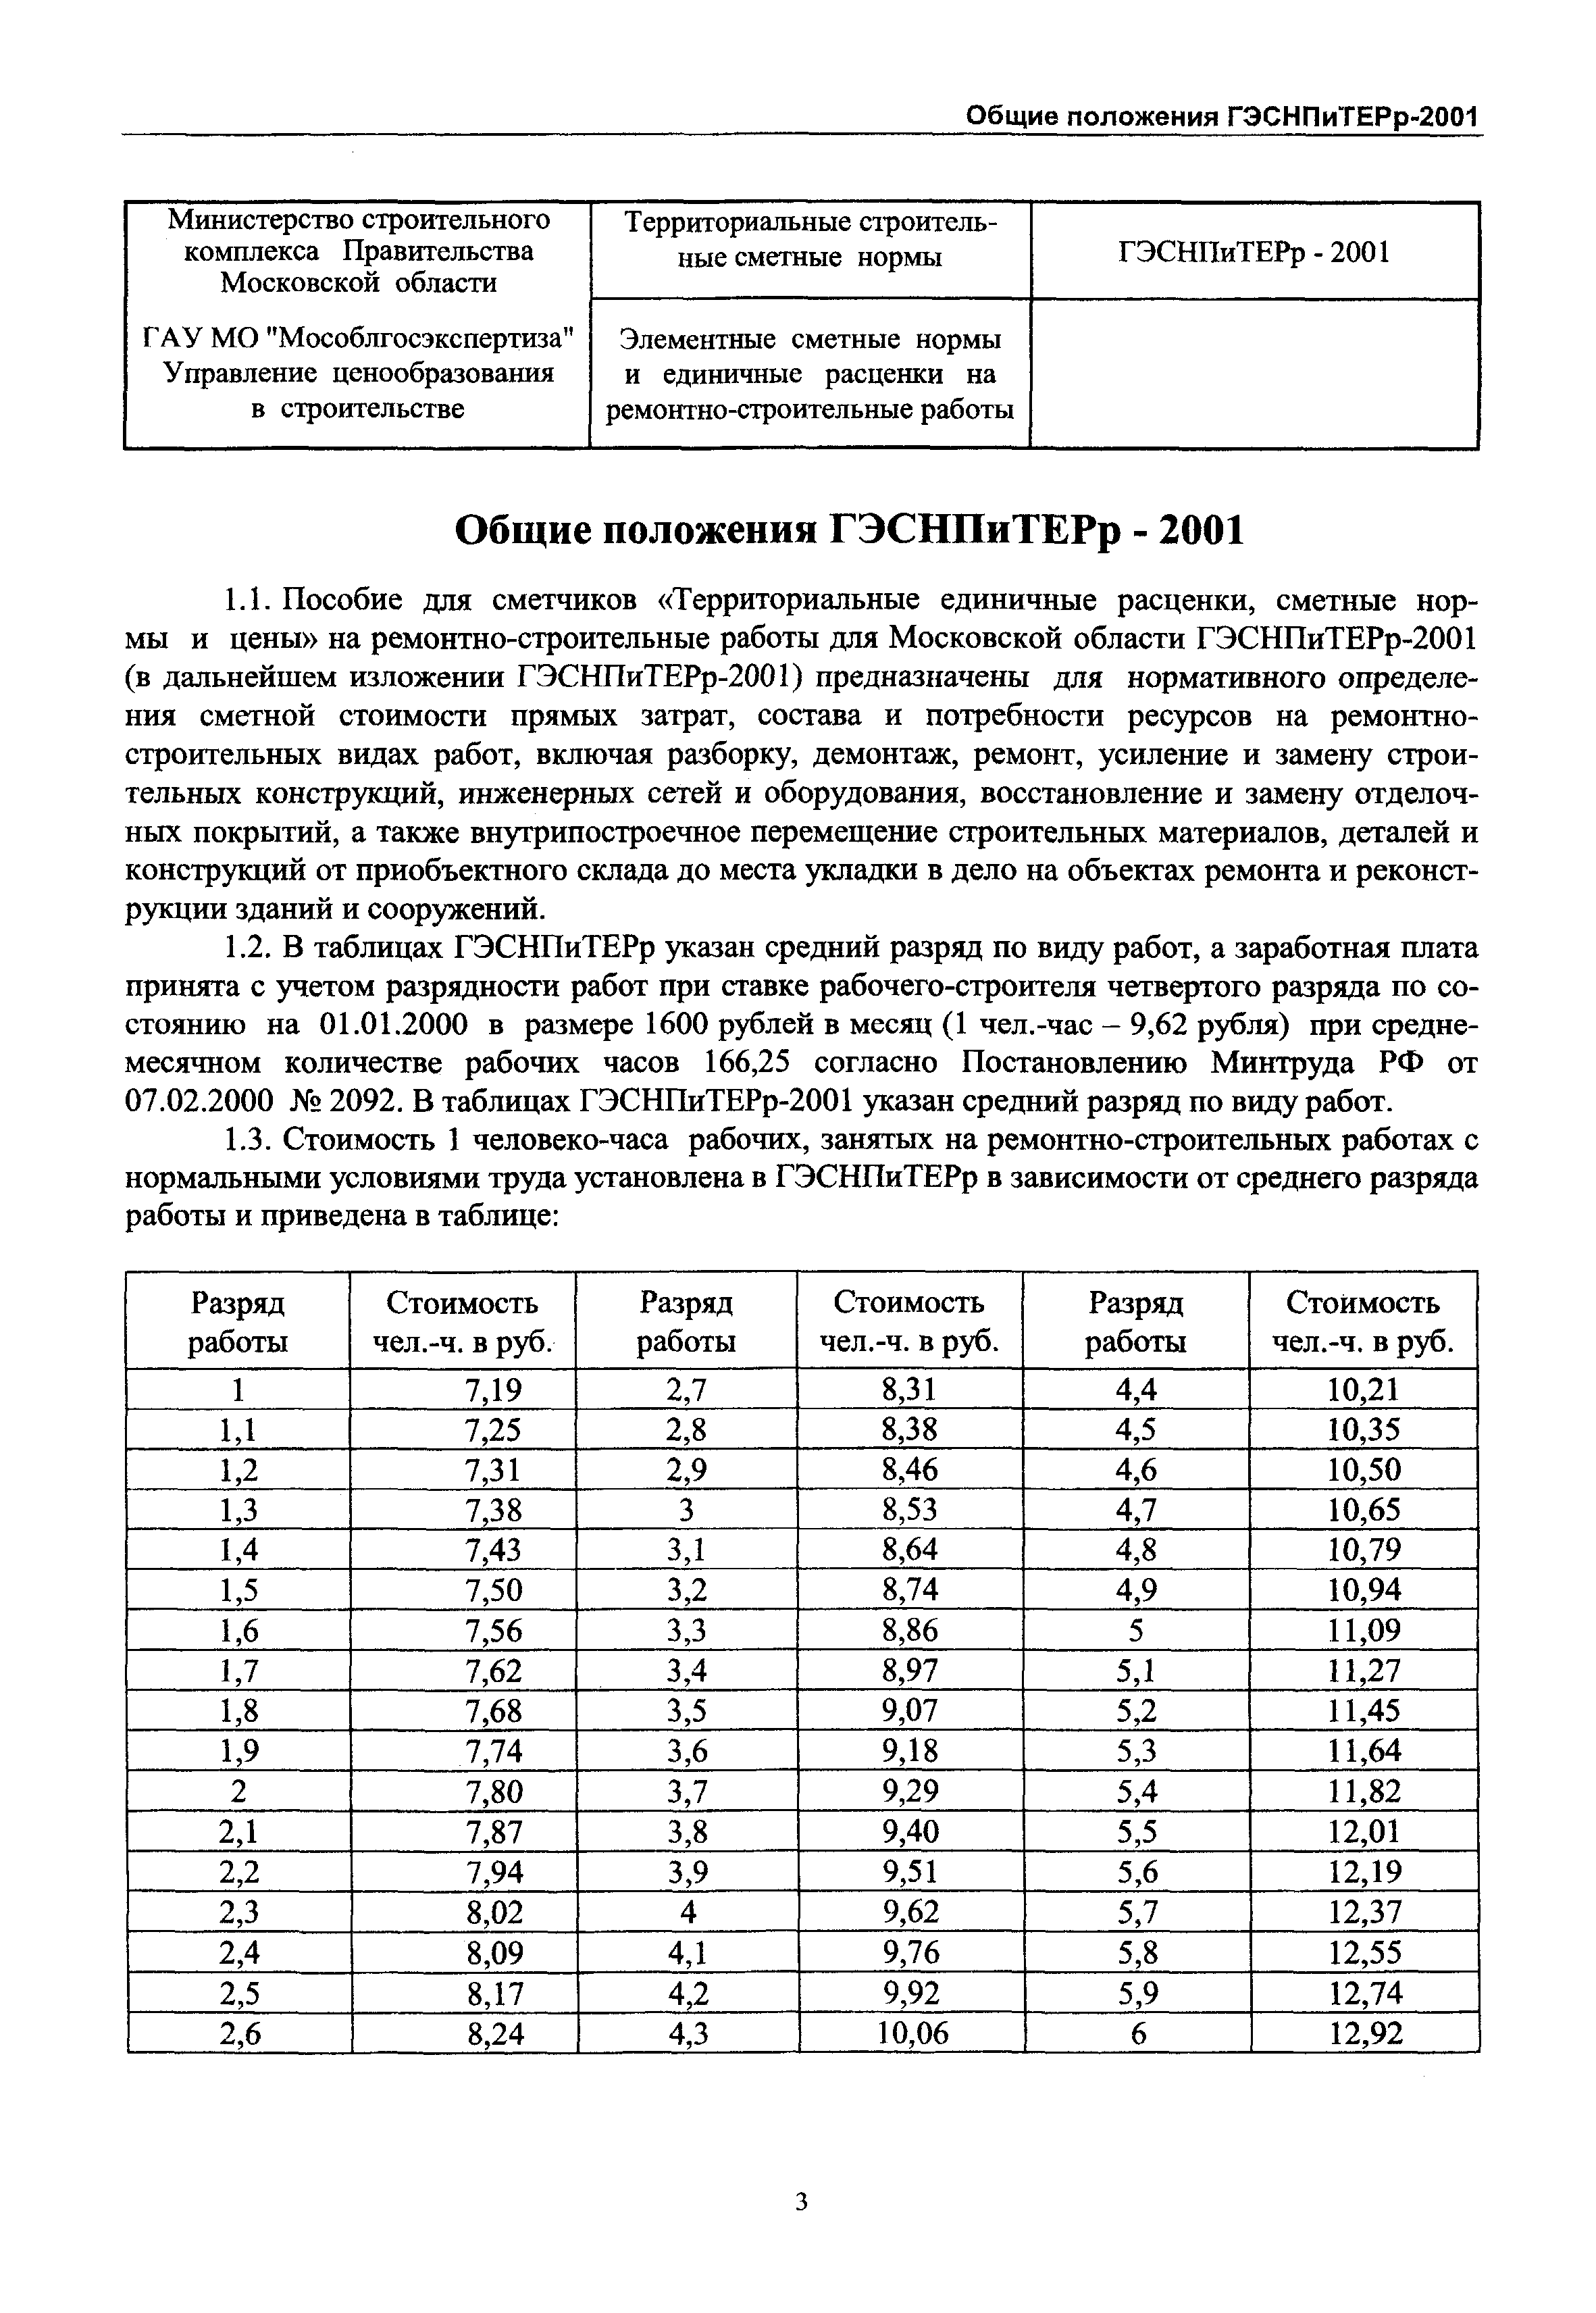 ГЭСНПиТЕРр 2001-53 Московской области